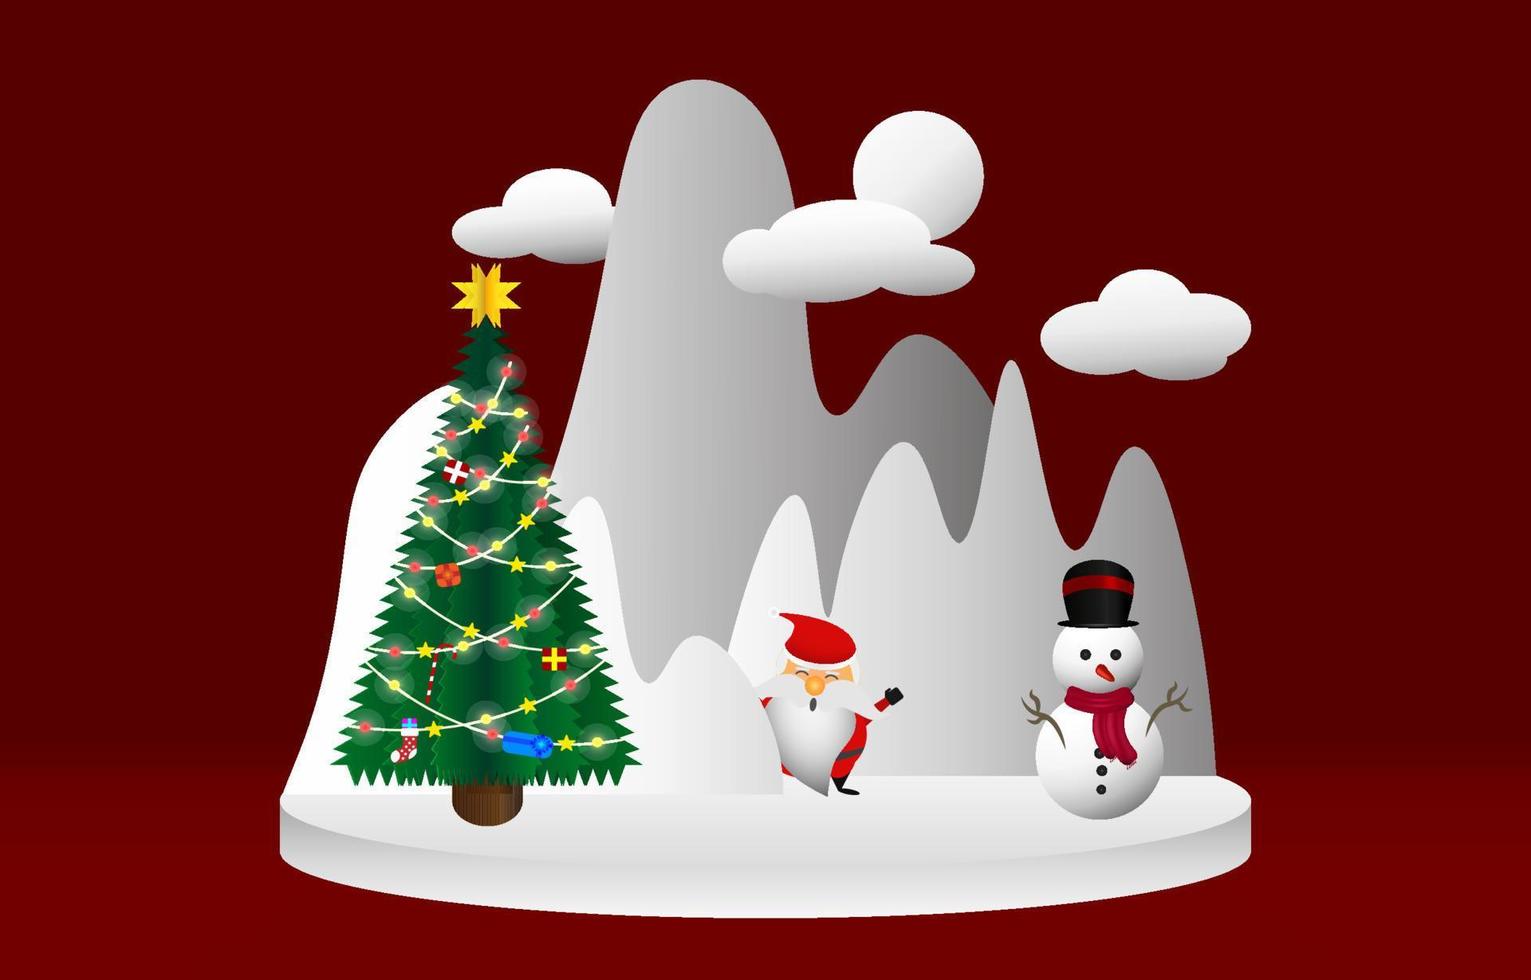 tema de navidad santa claus muñeco de nieve y árbol de navidad de pie en el podio. fondo blanco de montañas nevadas y nubes en un marco de tema rojo. diseño para corte de papel de cartel de banner de tarjeta de felicitación. vector